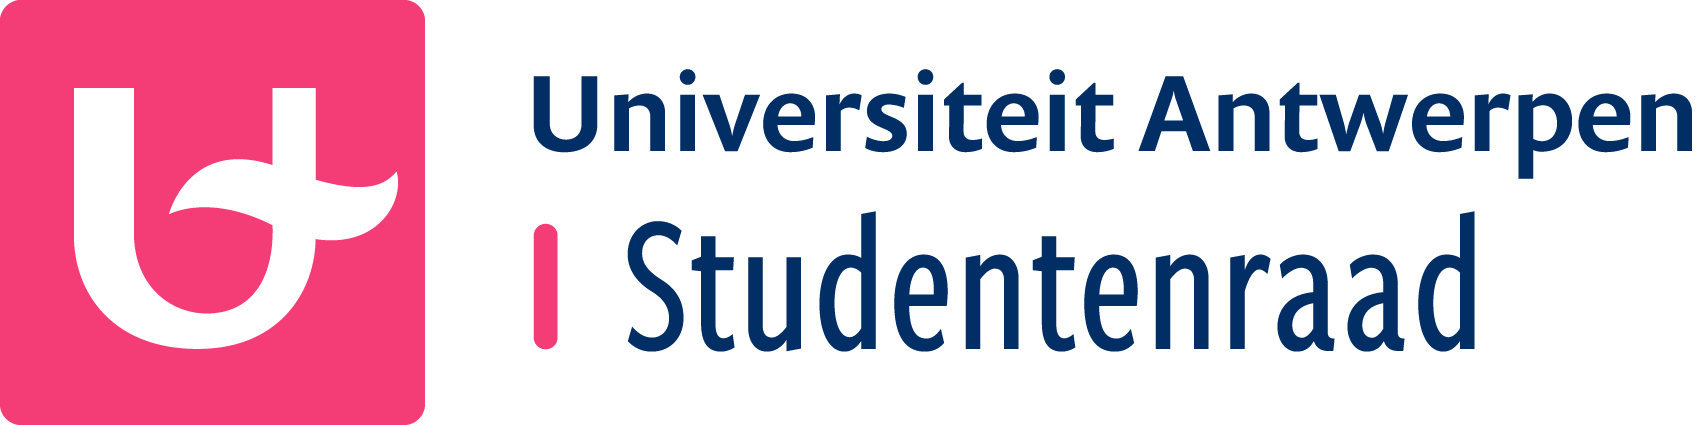 Universiteit Antwerpen Studentenraad